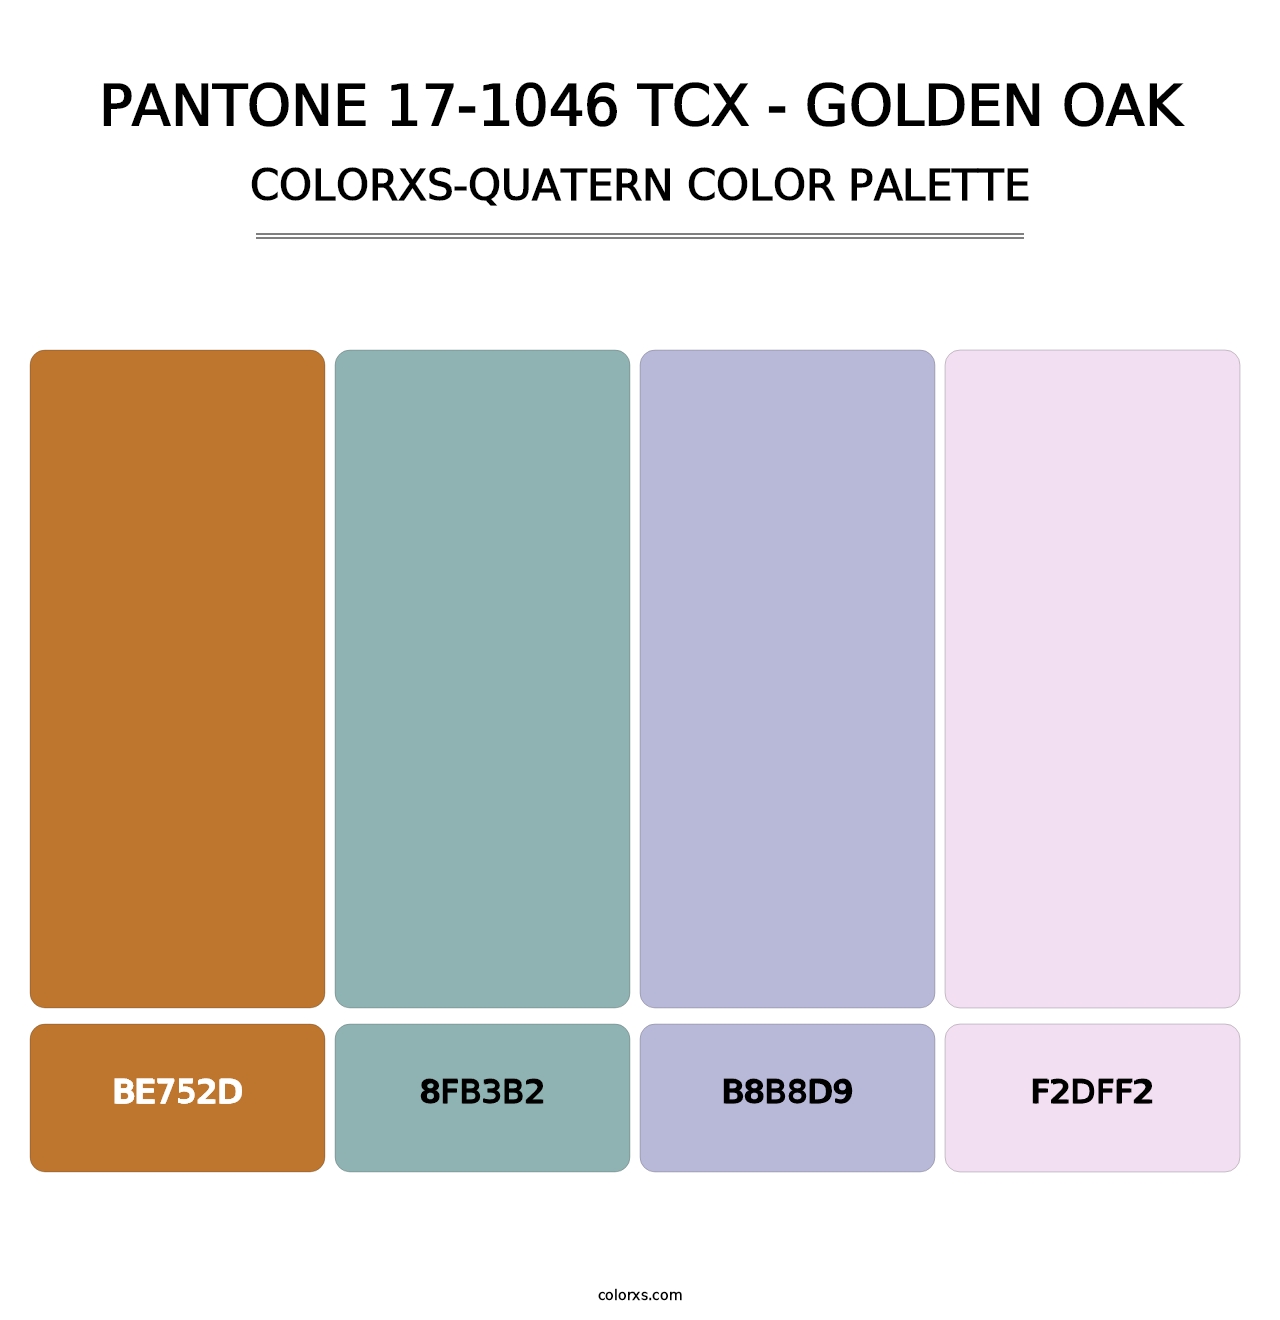 PANTONE 17-1046 TCX - Golden Oak - Colorxs Quatern Palette